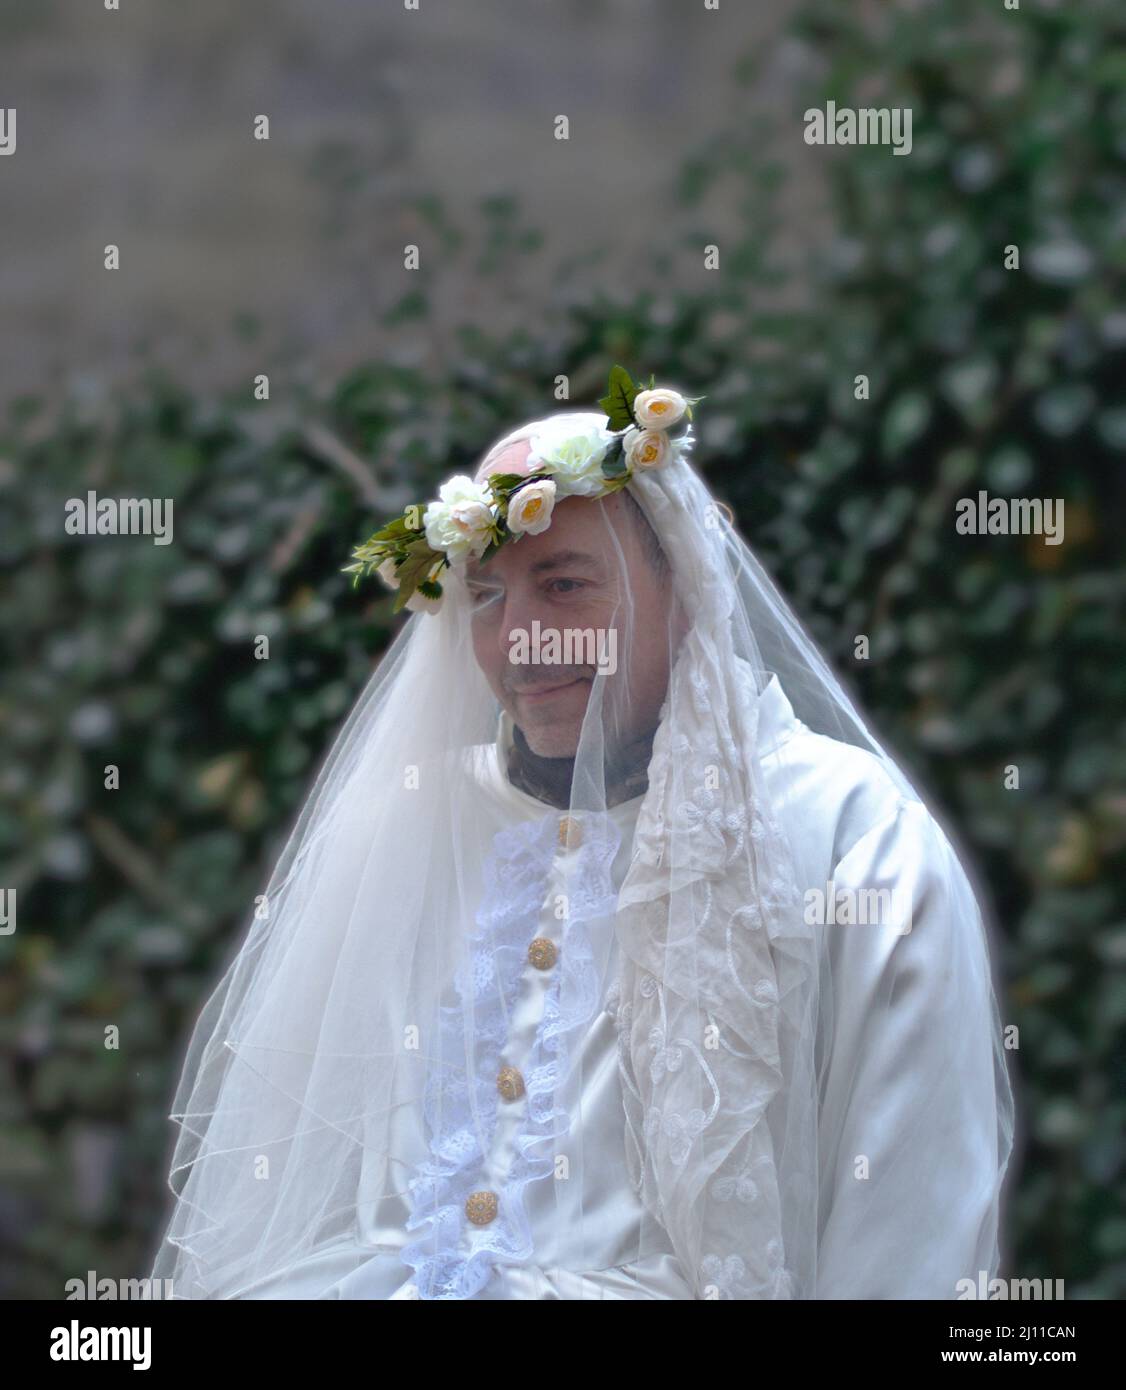 Enciso, Espagne – 5 mars 2022 : homme timide vêtu d'une robe de mariage blanche et d'une couronne de fleur sur sa tête, en regardant loin. Carnaval traditionnel d'Enciso. Banque D'Images